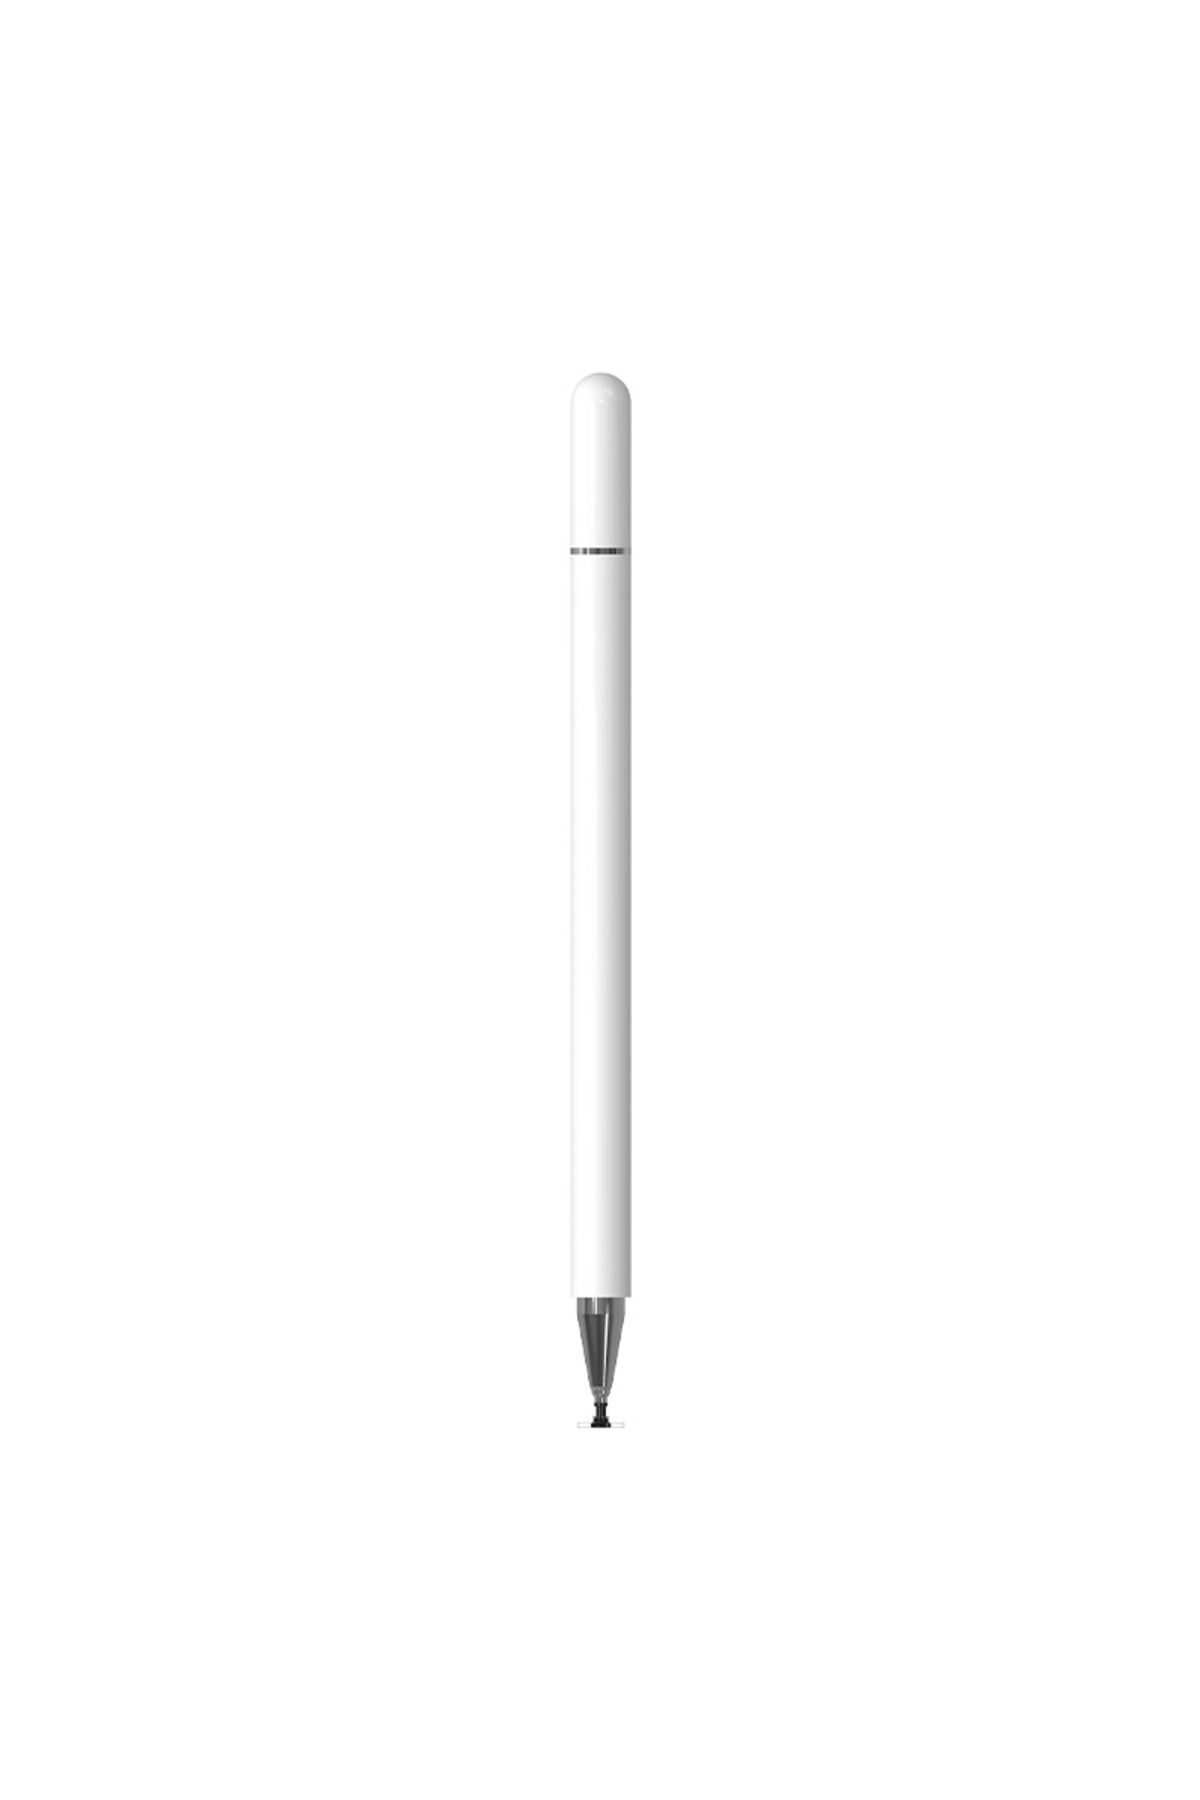 Techmaster Dokunmatik Passive Stylus Tablet Telefon Bilgisayar Kalemi Beyaz